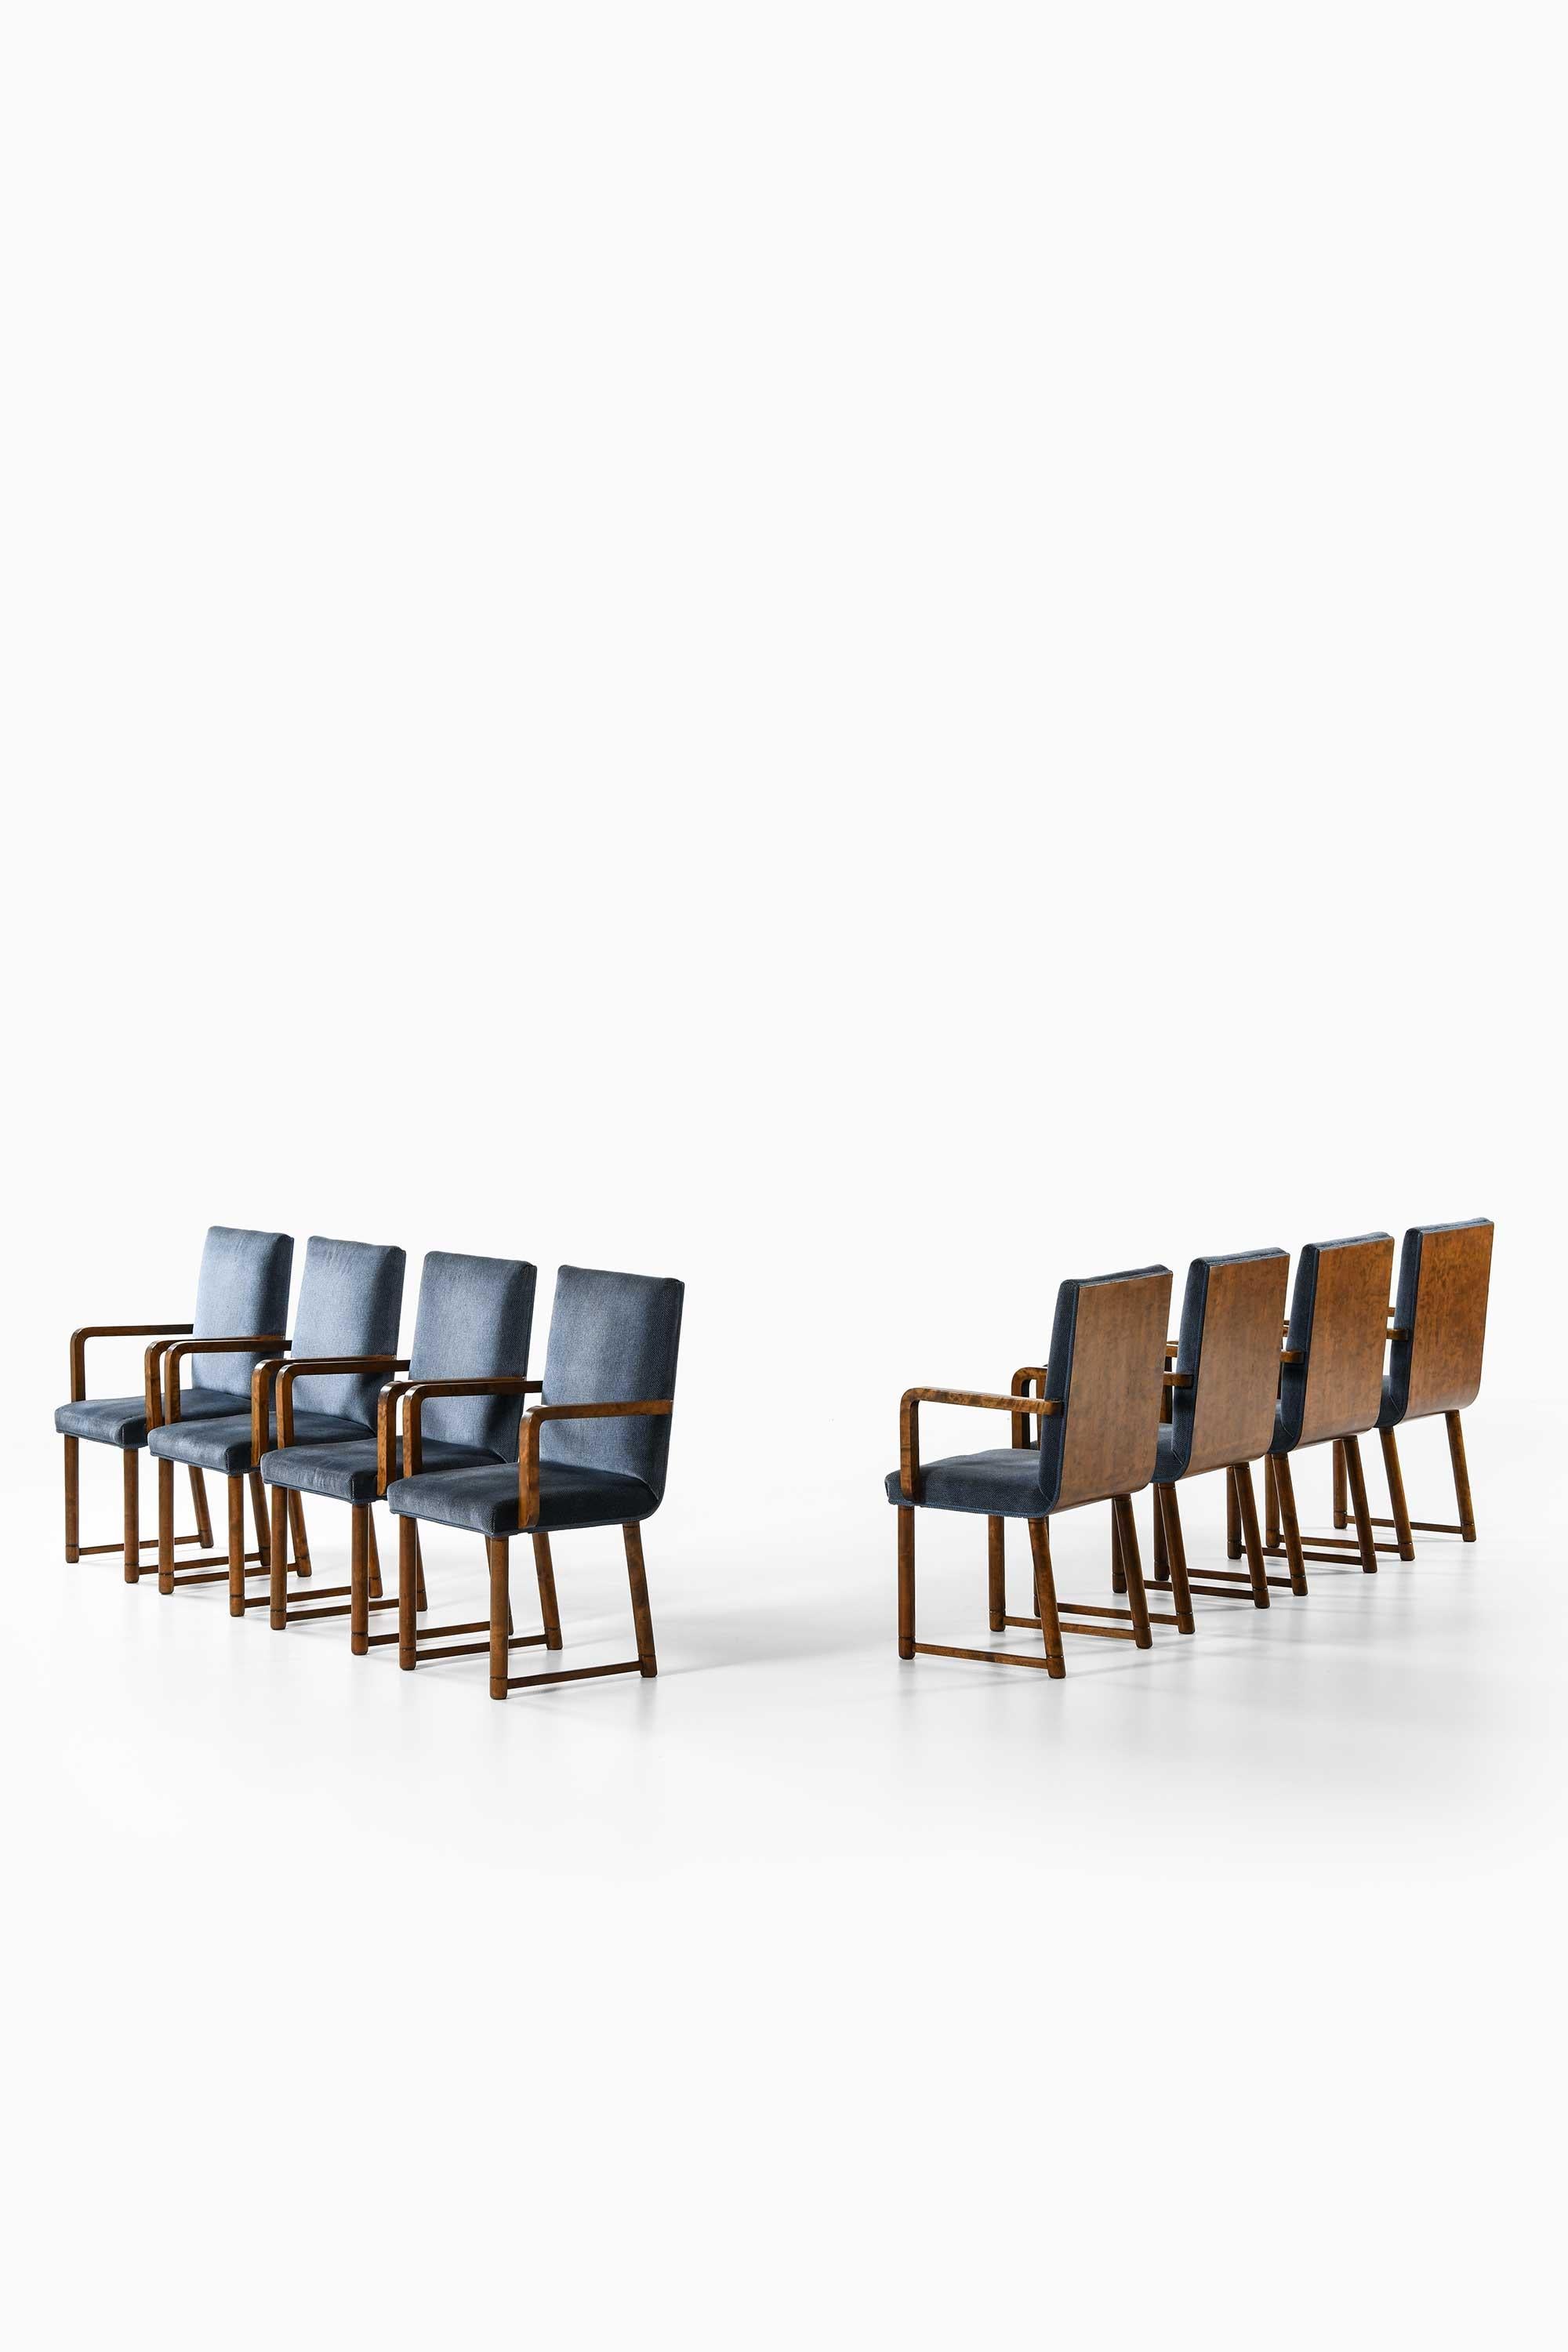 Seltener Satz von 8 Sesseln von unbekanntem Designer
Produziert in Finnland
Birke gebeizt und mit Stoff überzogen
1930’s
Mitte des Jahrhunderts, skandinavisch
Abmessungen (B x T x H): 58 x 55 x 93,5 cm, SH: 45 cm, AH: 66 cm